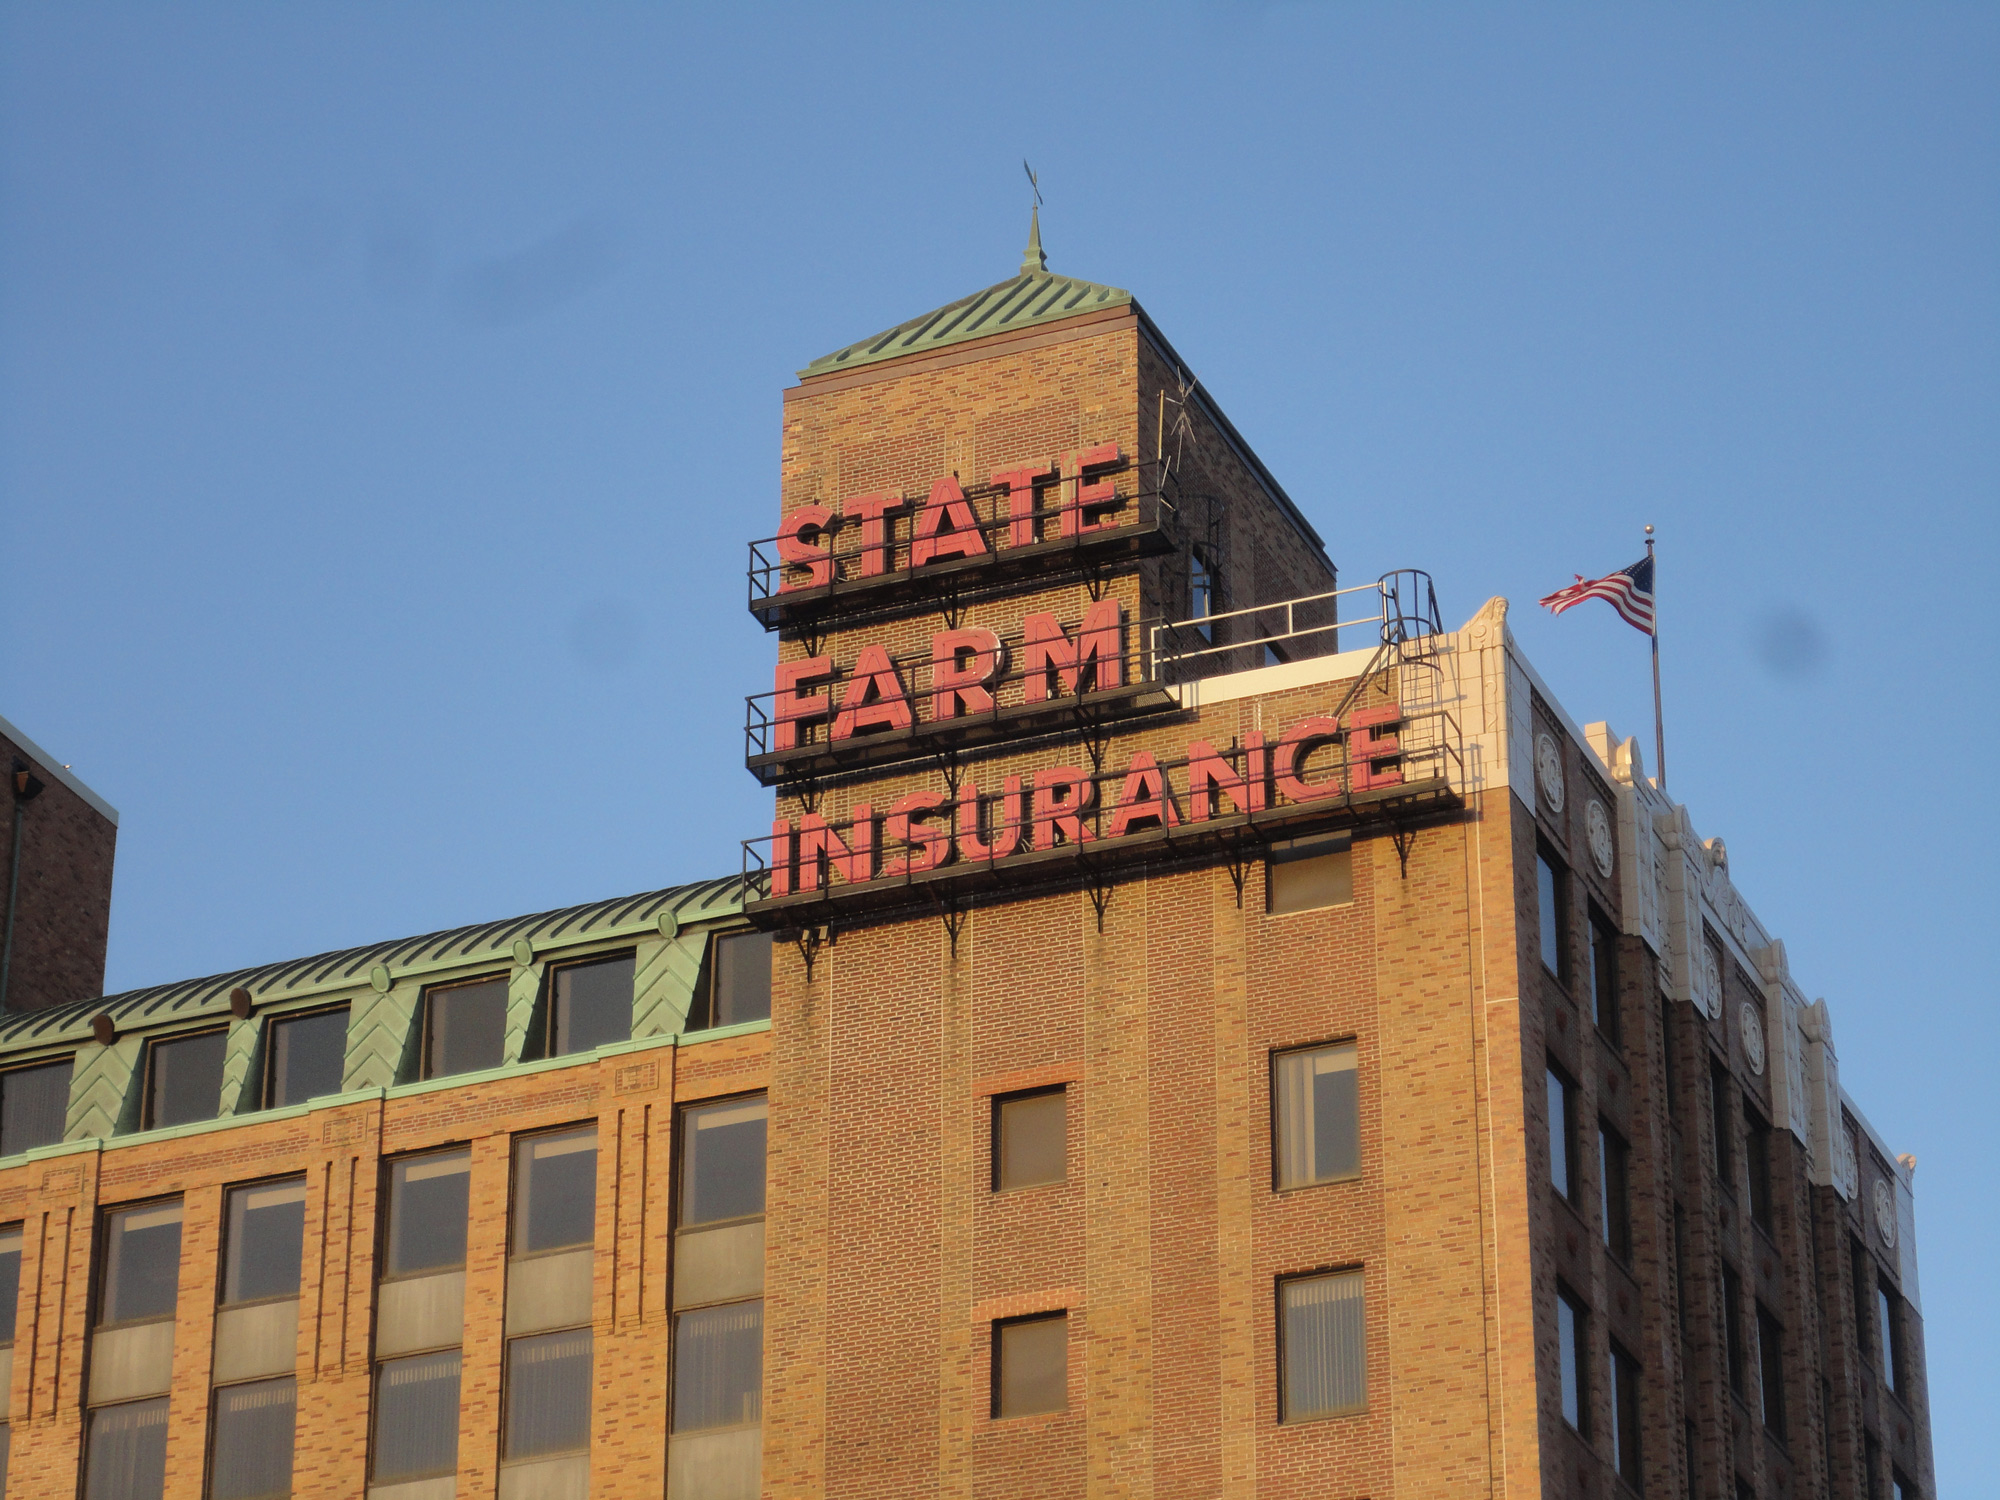 戴着亮红色帽子的国家农场保险公司在棕色砖石建筑的顶部。